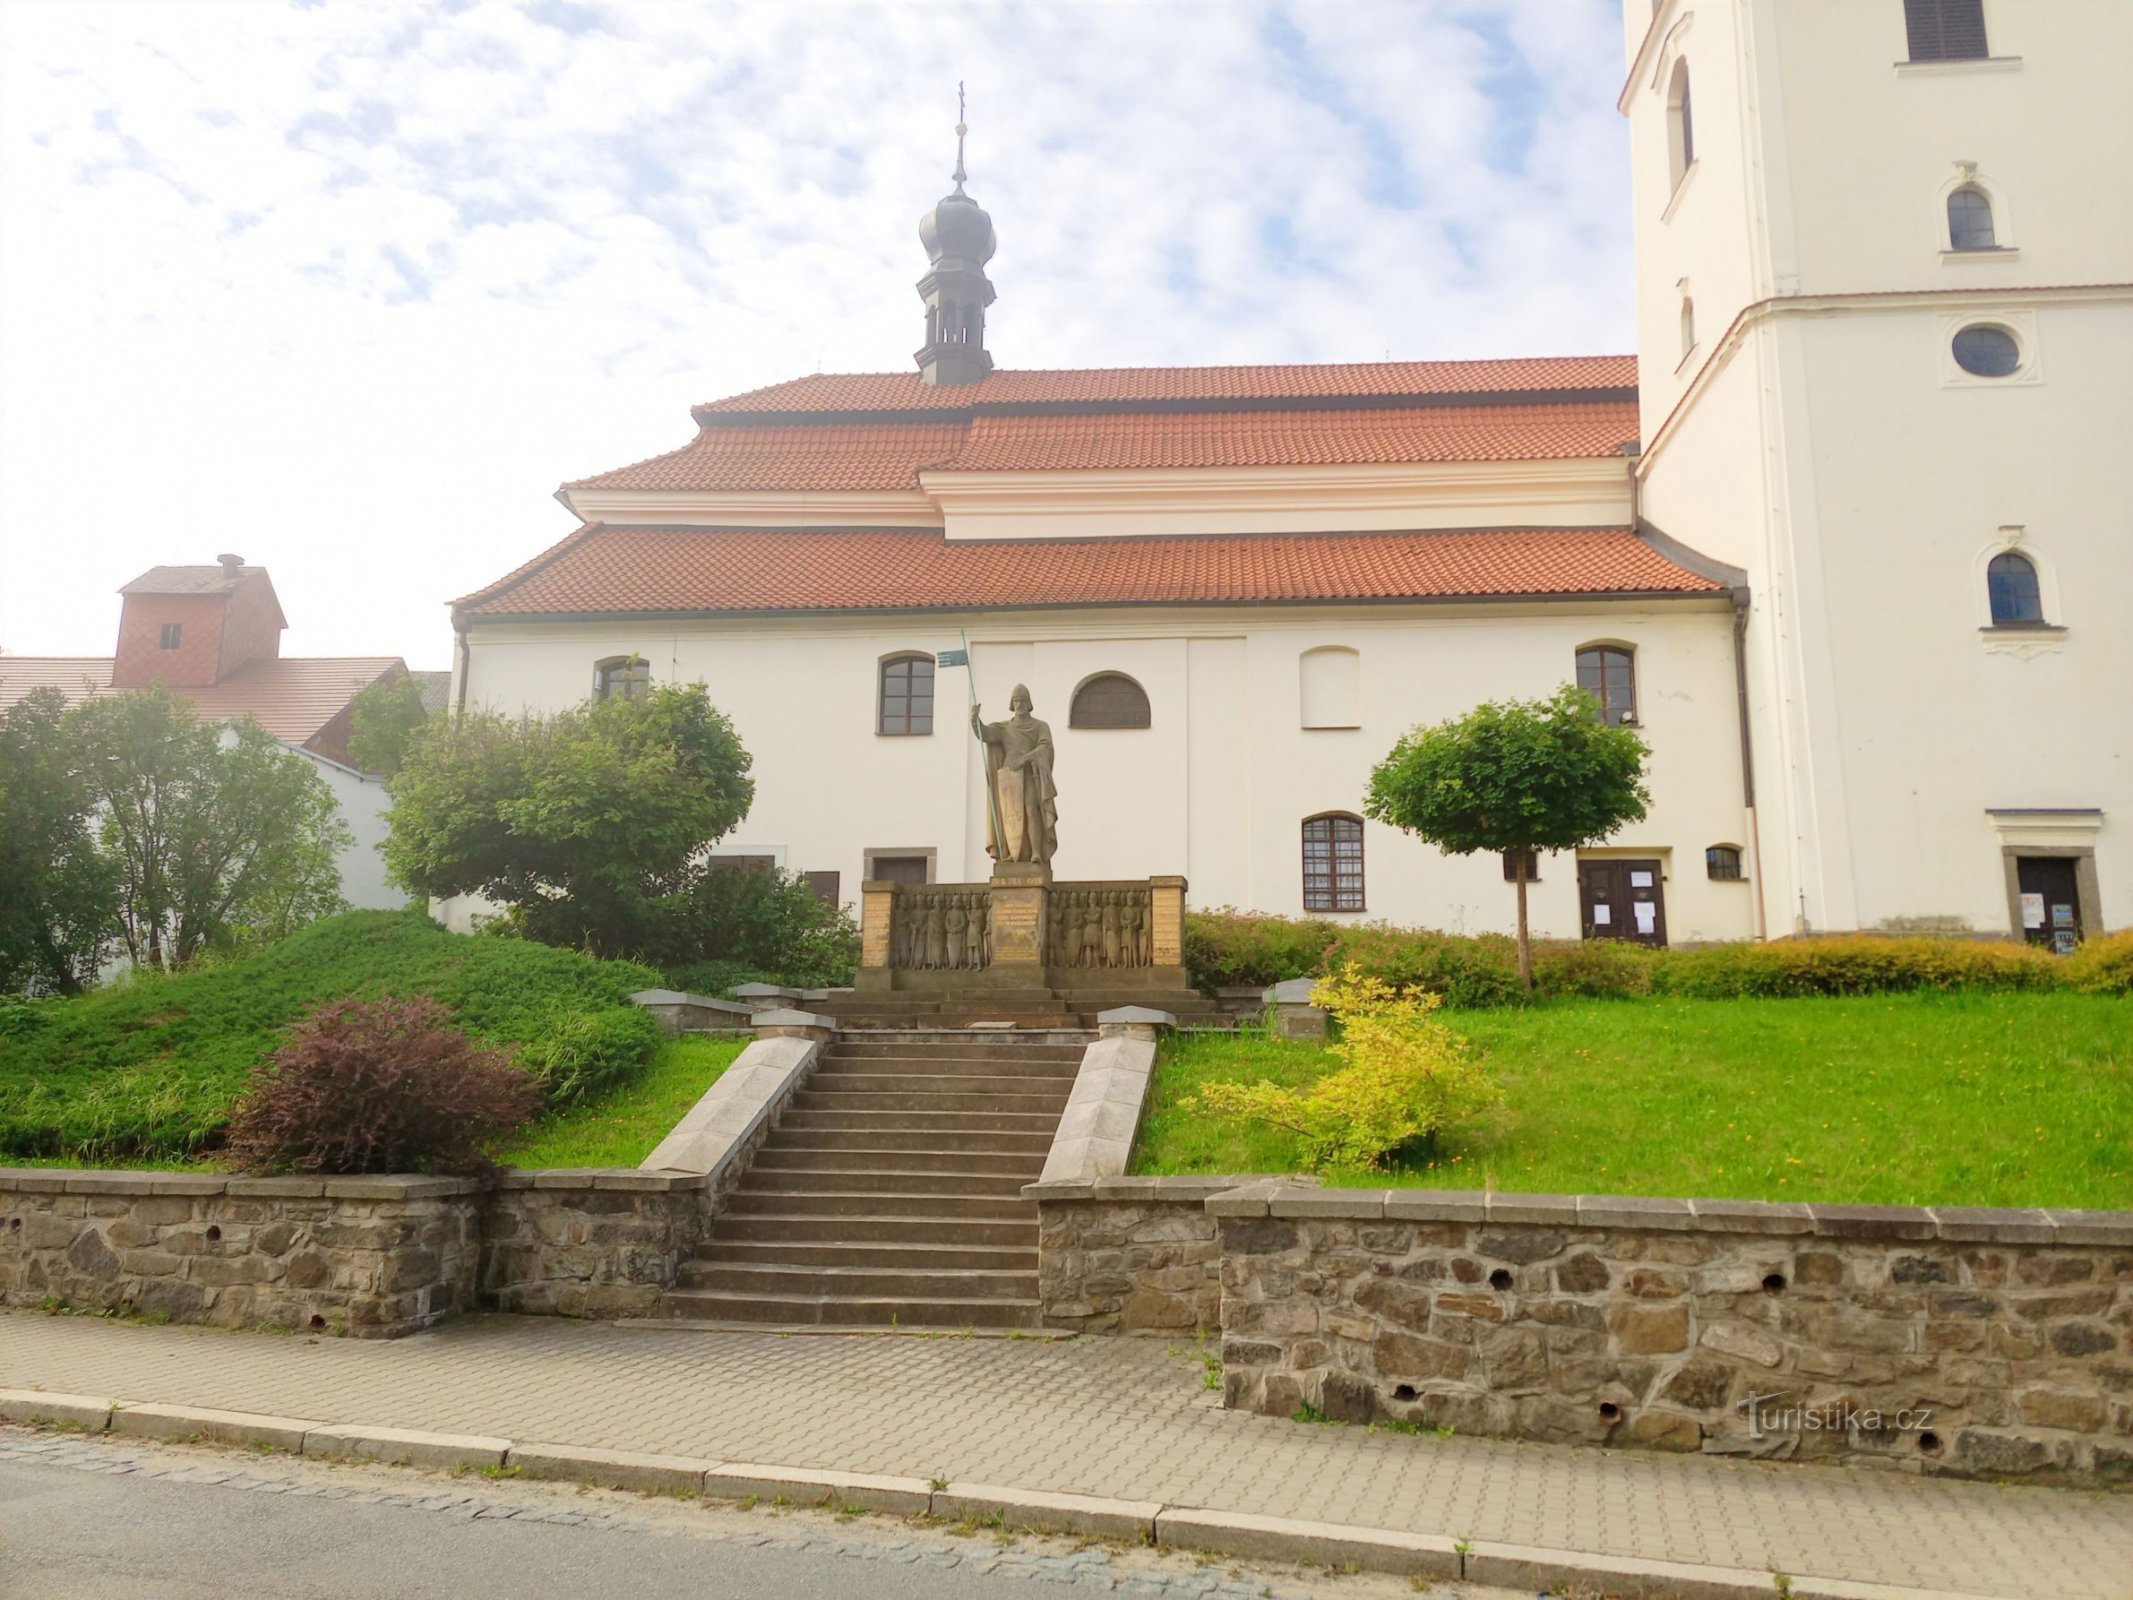 1. Standbeeld van St. Wenceslas voor de gelijknamige kerk in Votice